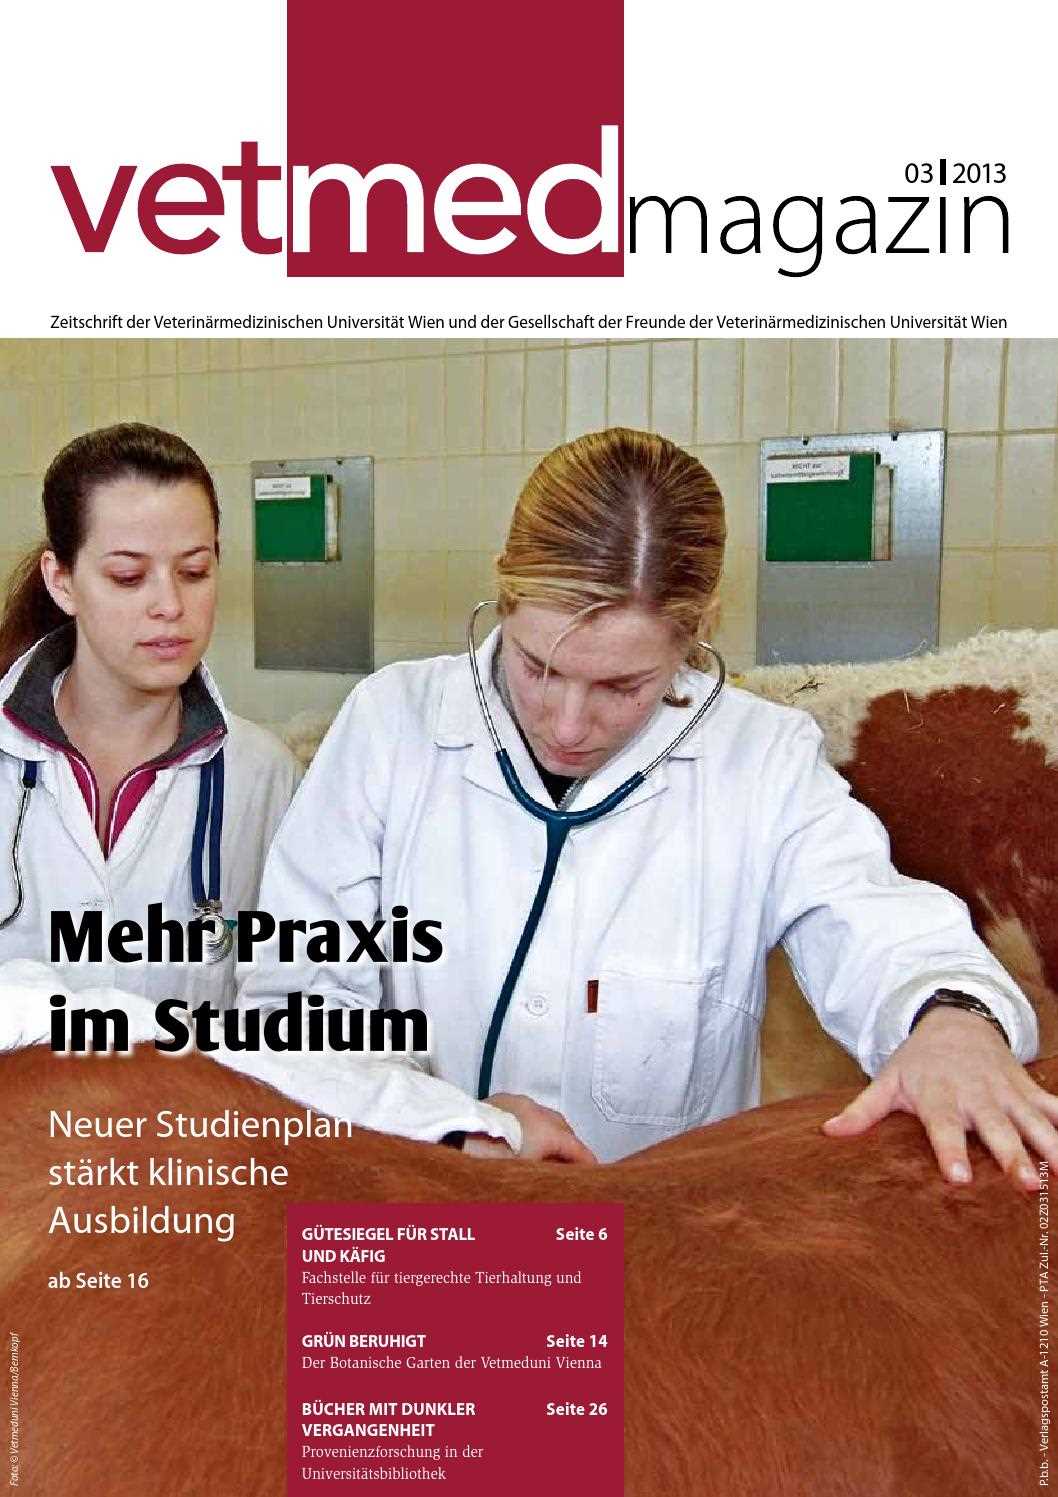 Tierarzt studieren Österreich Ein umfassender Leitfaden für zukünftige Tierärzte